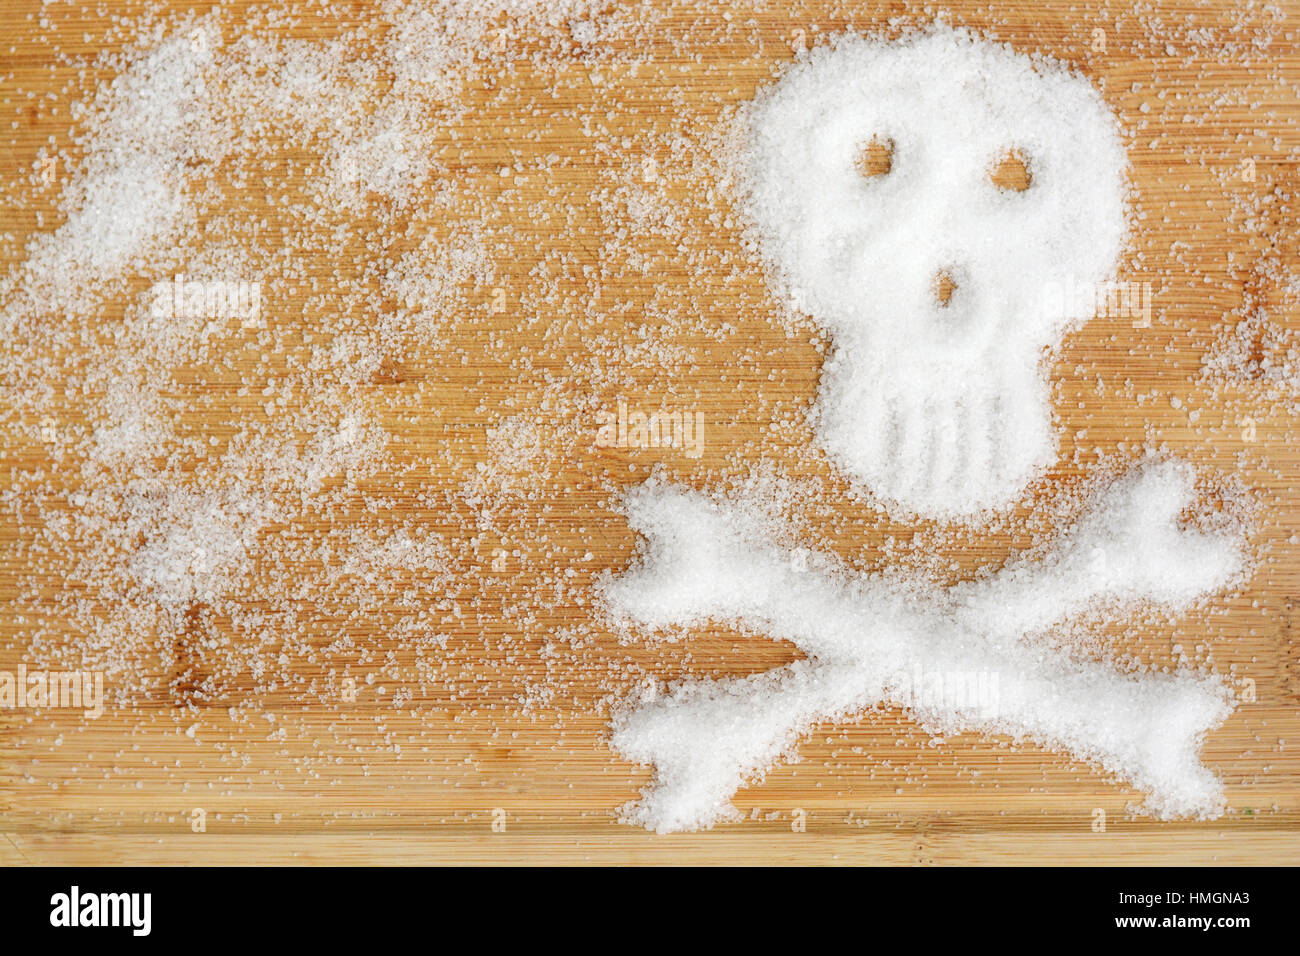 Tödliche Zucker durch verschüttete weißen Zucker Kristalle bilden einen Totenkopf auf einer hölzernen Tisch vorgeschlagen Stockfoto